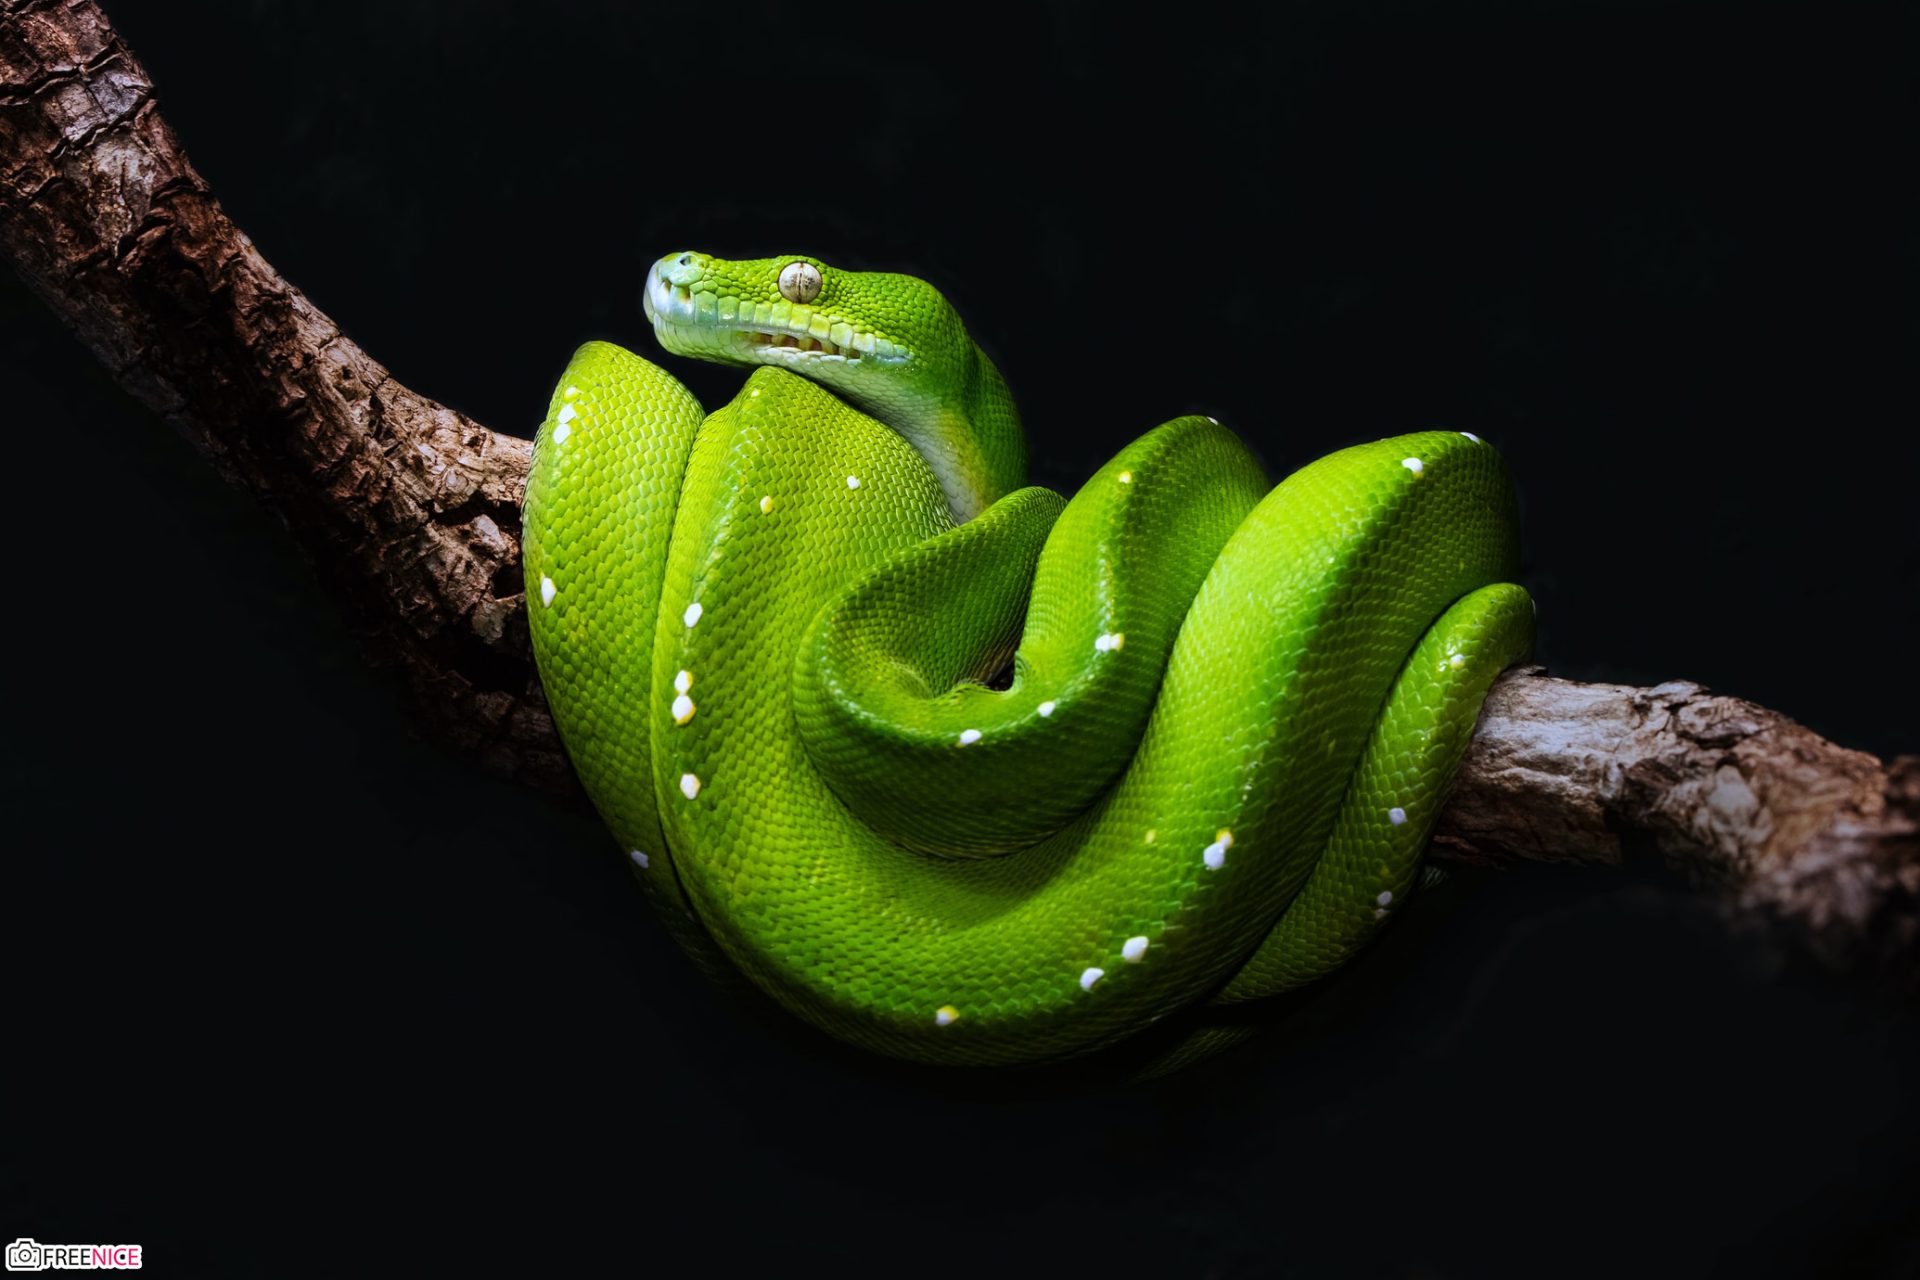 Các fan hâm mộ rắn chắc chắn sẽ rất thích ảnh nền rắn đẹp này. Với hình ảnh chân thực và rực rỡ của rắn, bạn sẽ có được một trải nghiệm tuyệt vời với chỉ một cú nhấp chuột. Hãy dành chút thời gian để chiêm ngưỡng nó và cảm nhận sự đẹp của nó!